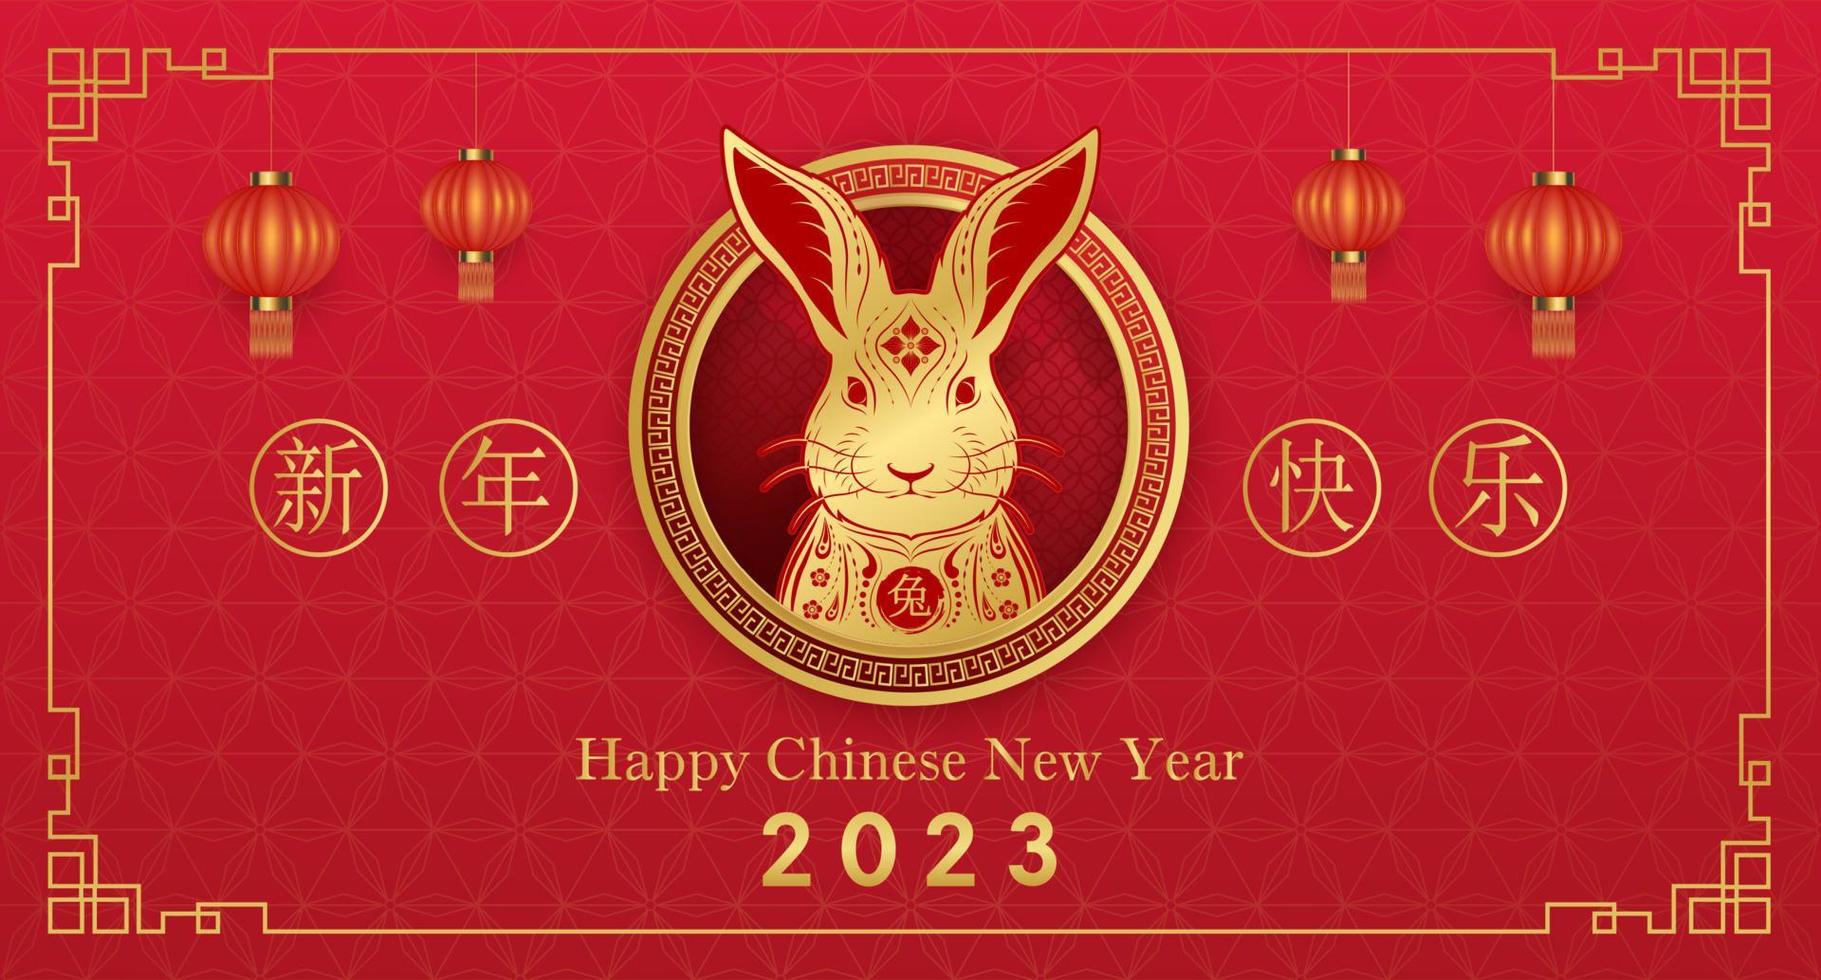 carte joyeux nouvel an chinois 2023, signe du zodiaque lapin sur fond de couleur rouge. traduction chinoise bonne année 2023, année du lapin. vecteur eps10.